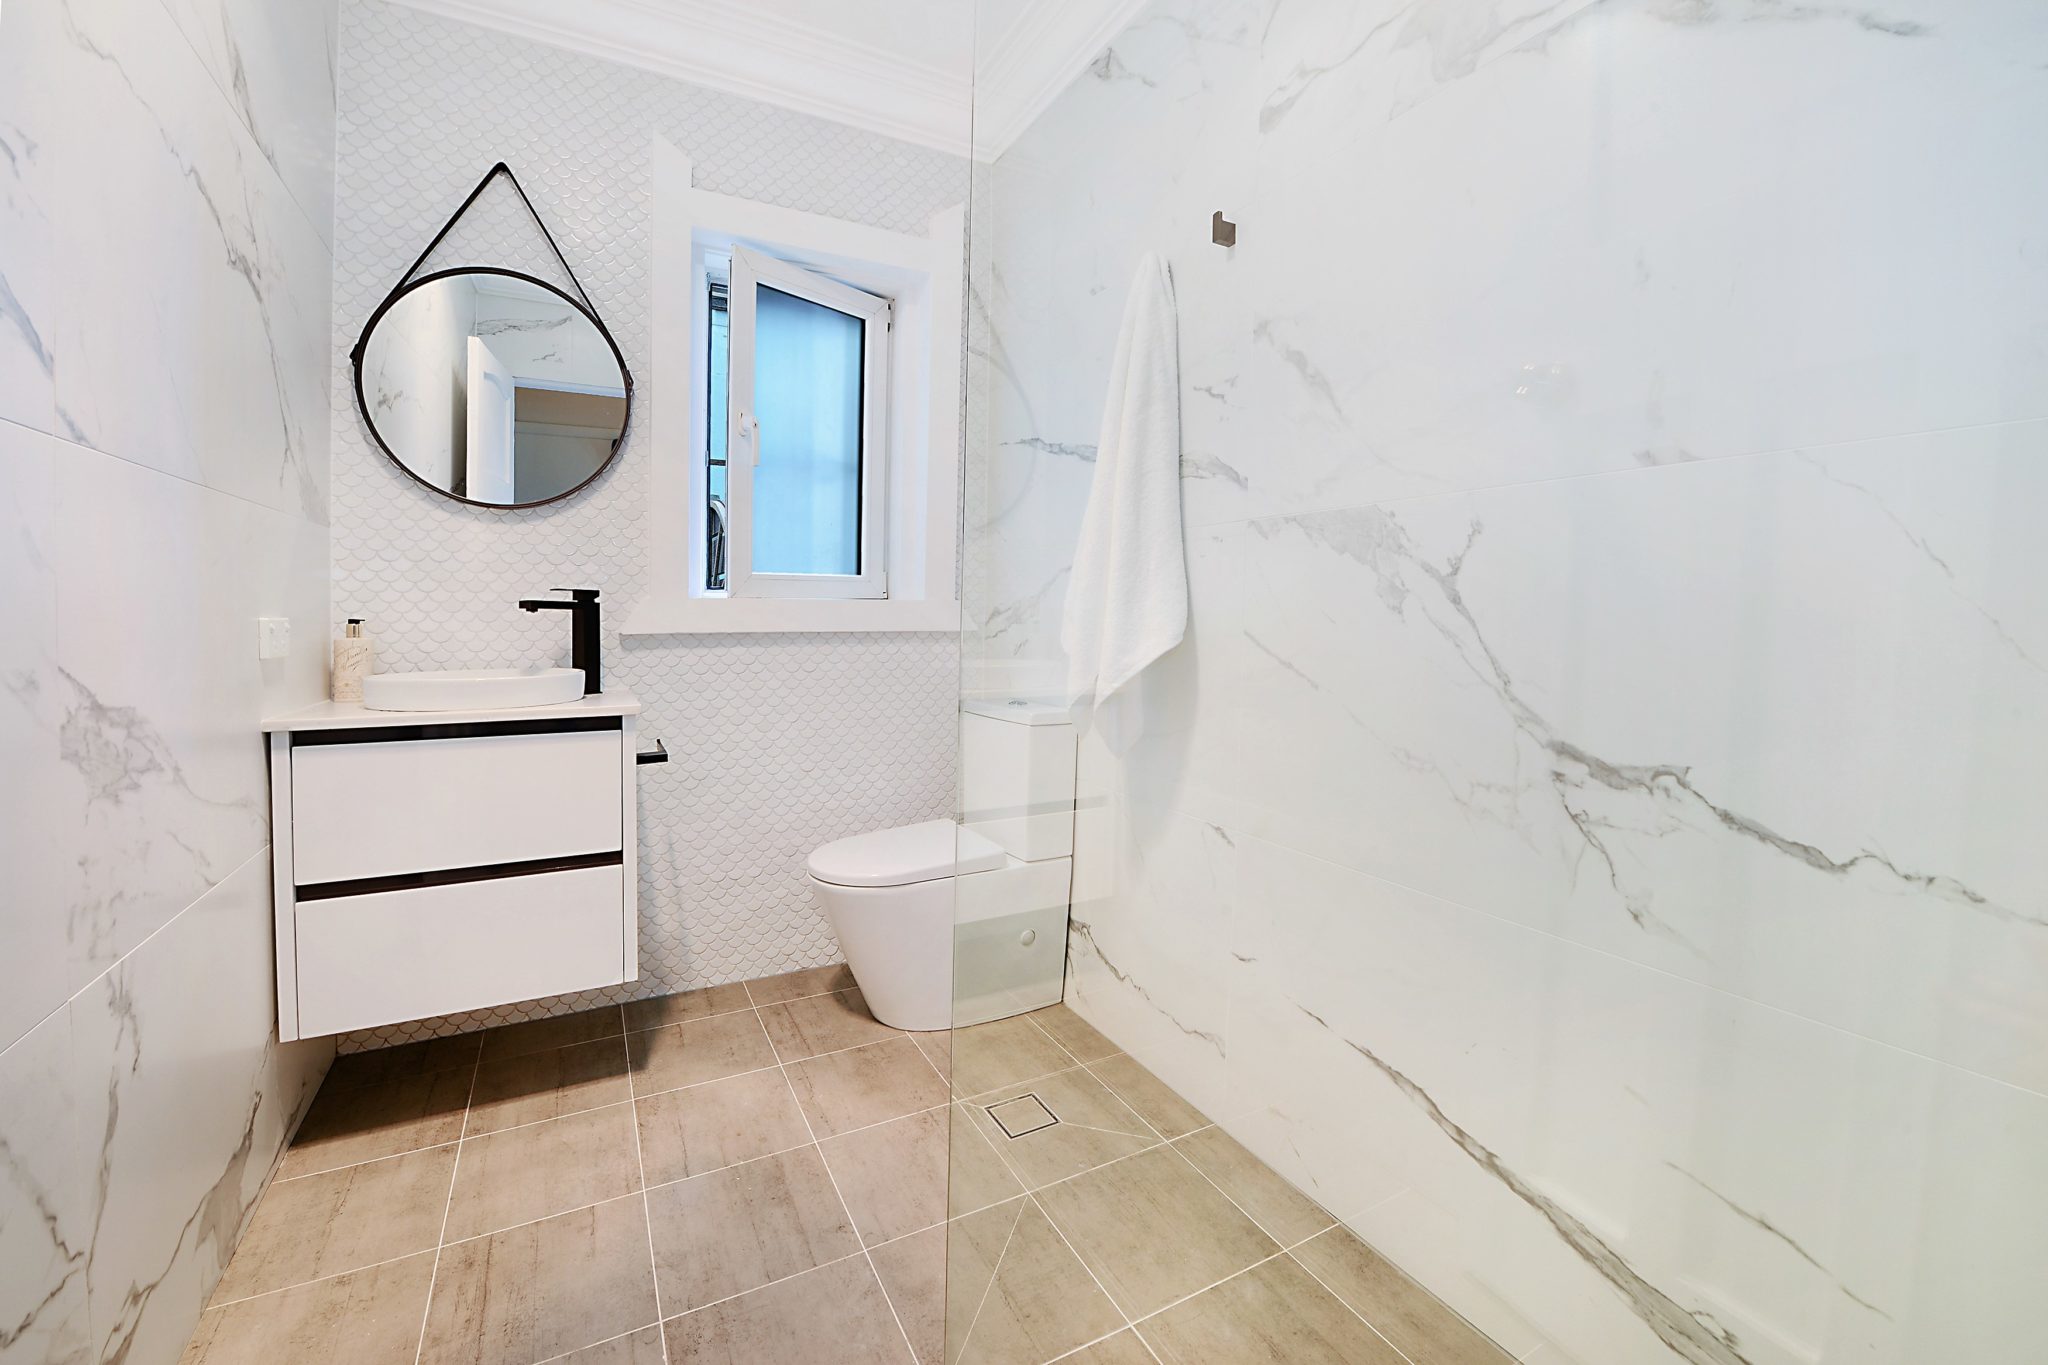 Kitchen and Bathroom Renovations Sydney - Bondi